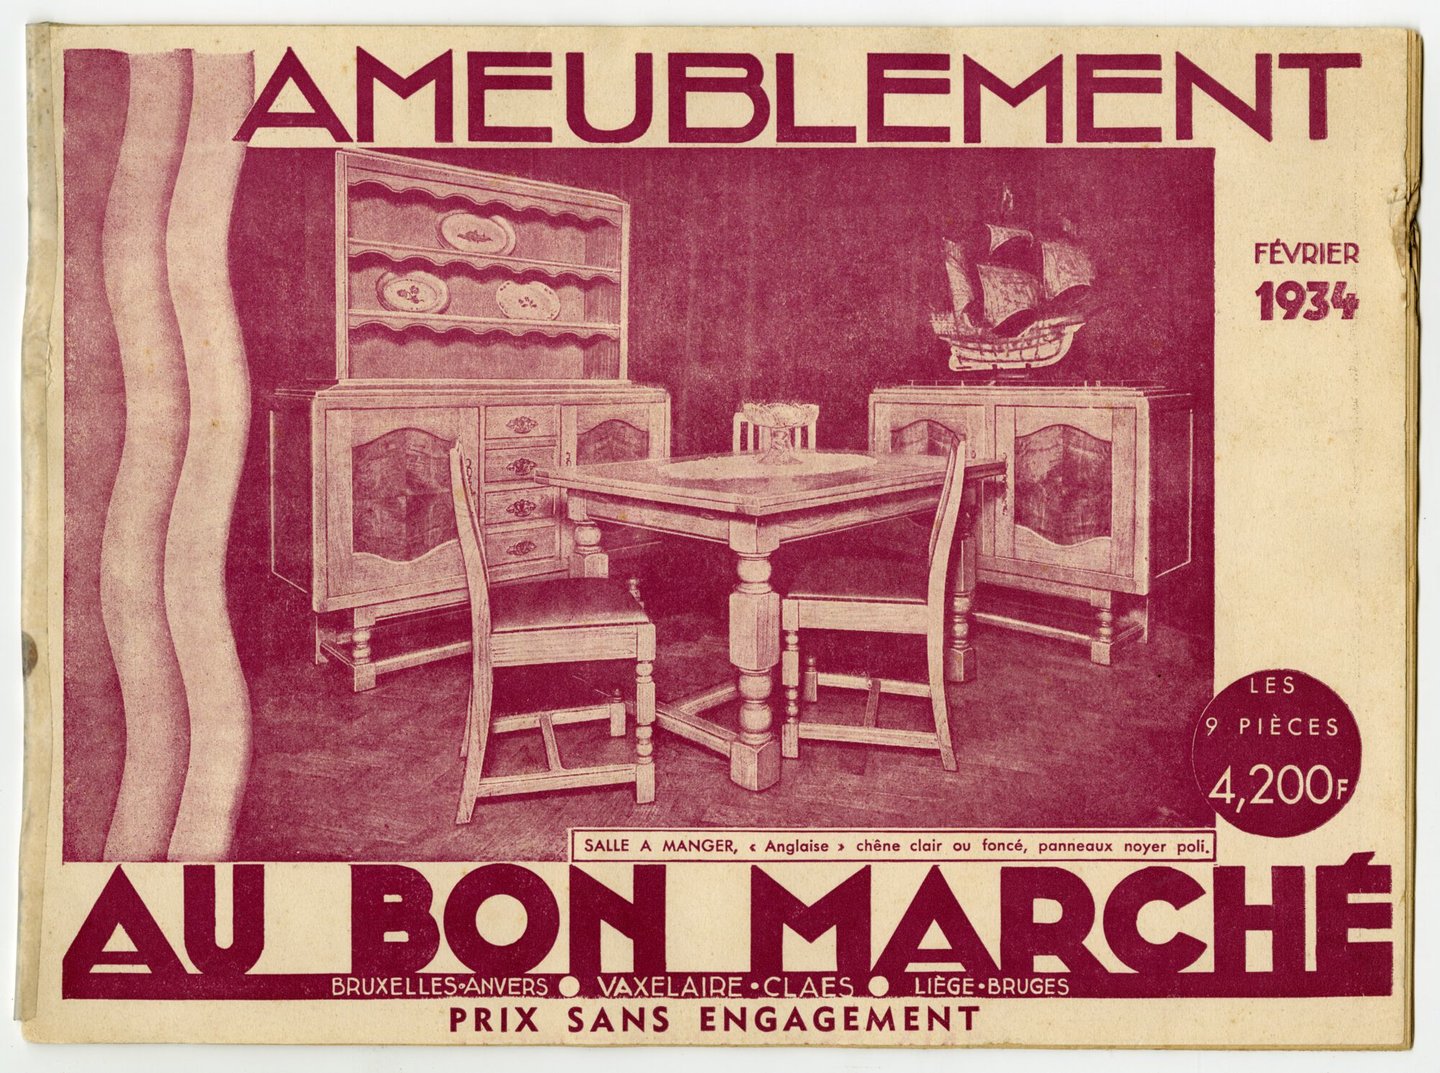 Productcatalogus voor meubelen te koop bij Au Bon Marché